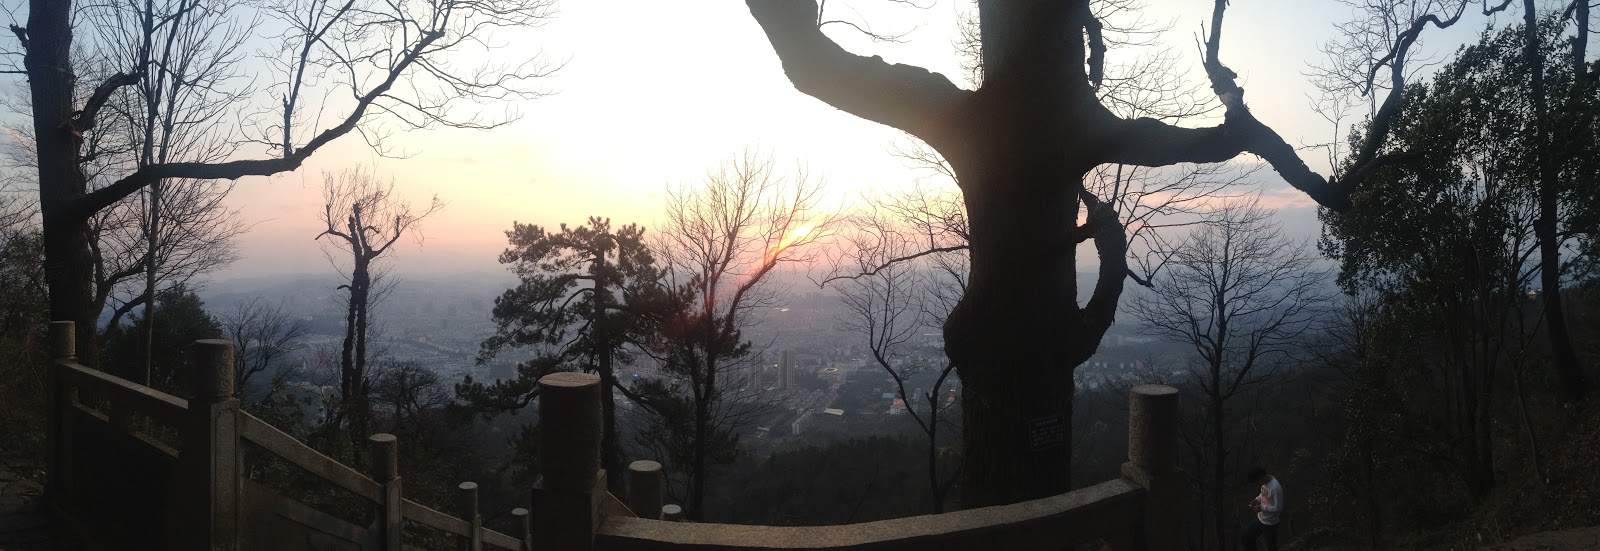 Panoramic View of Chenzhou.jpg